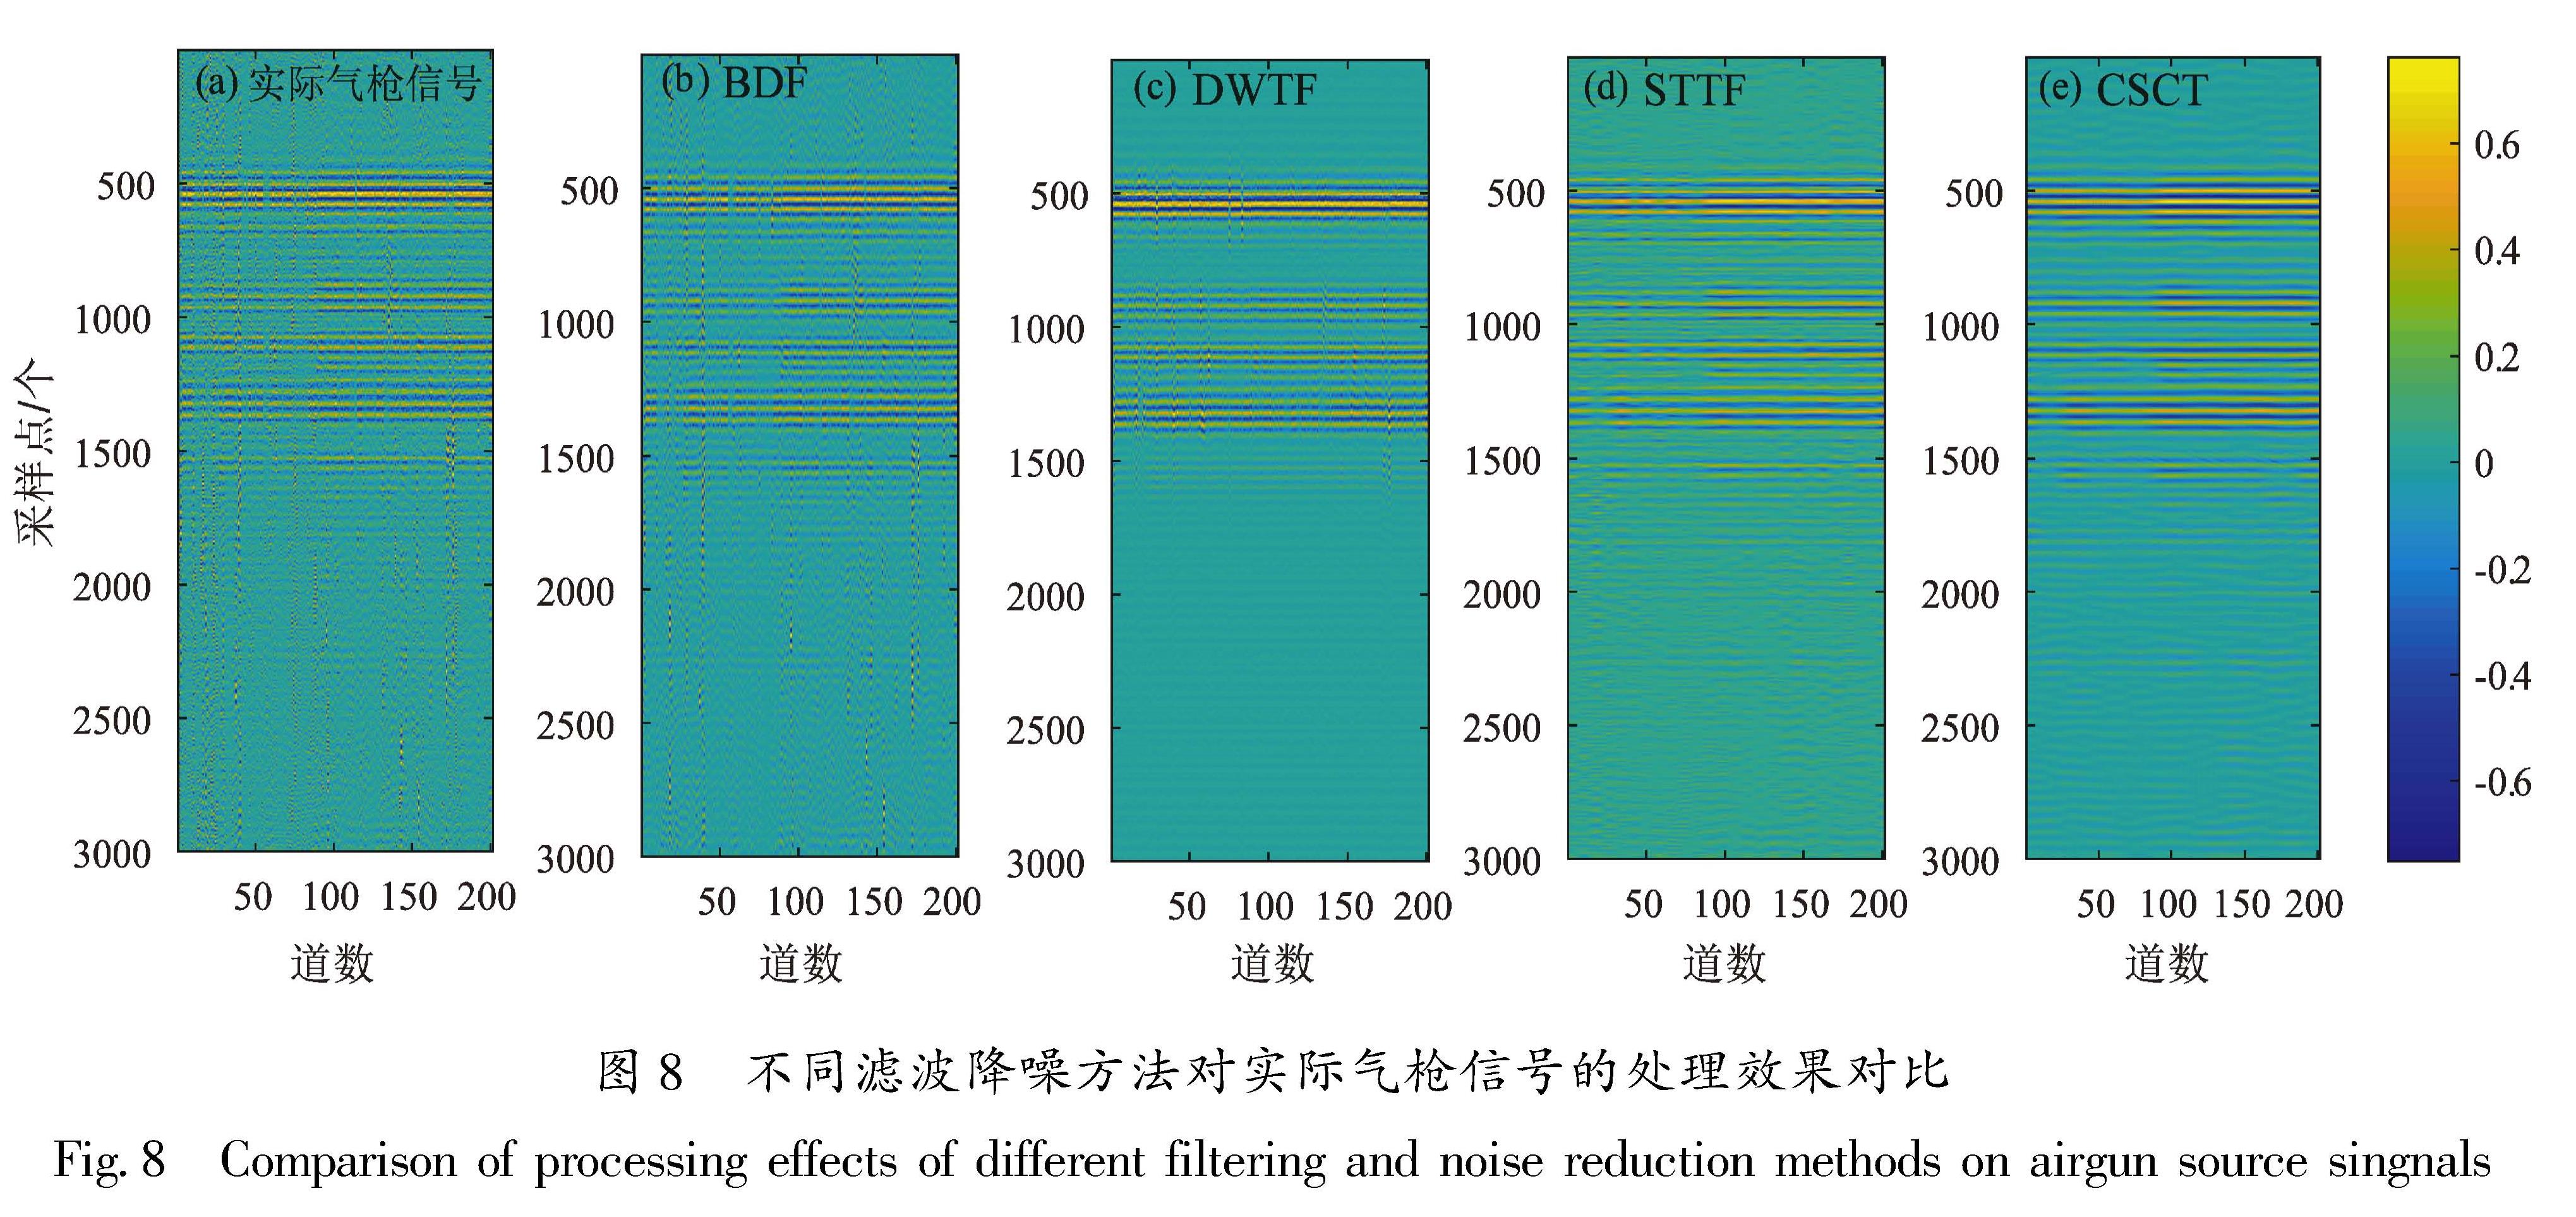 图8 不同滤波降噪方法对实际气枪信号的处理效果对比<br/>Fig.8 Comparison of processing effects of different filtering and noise reduction methods on airgun source singnals